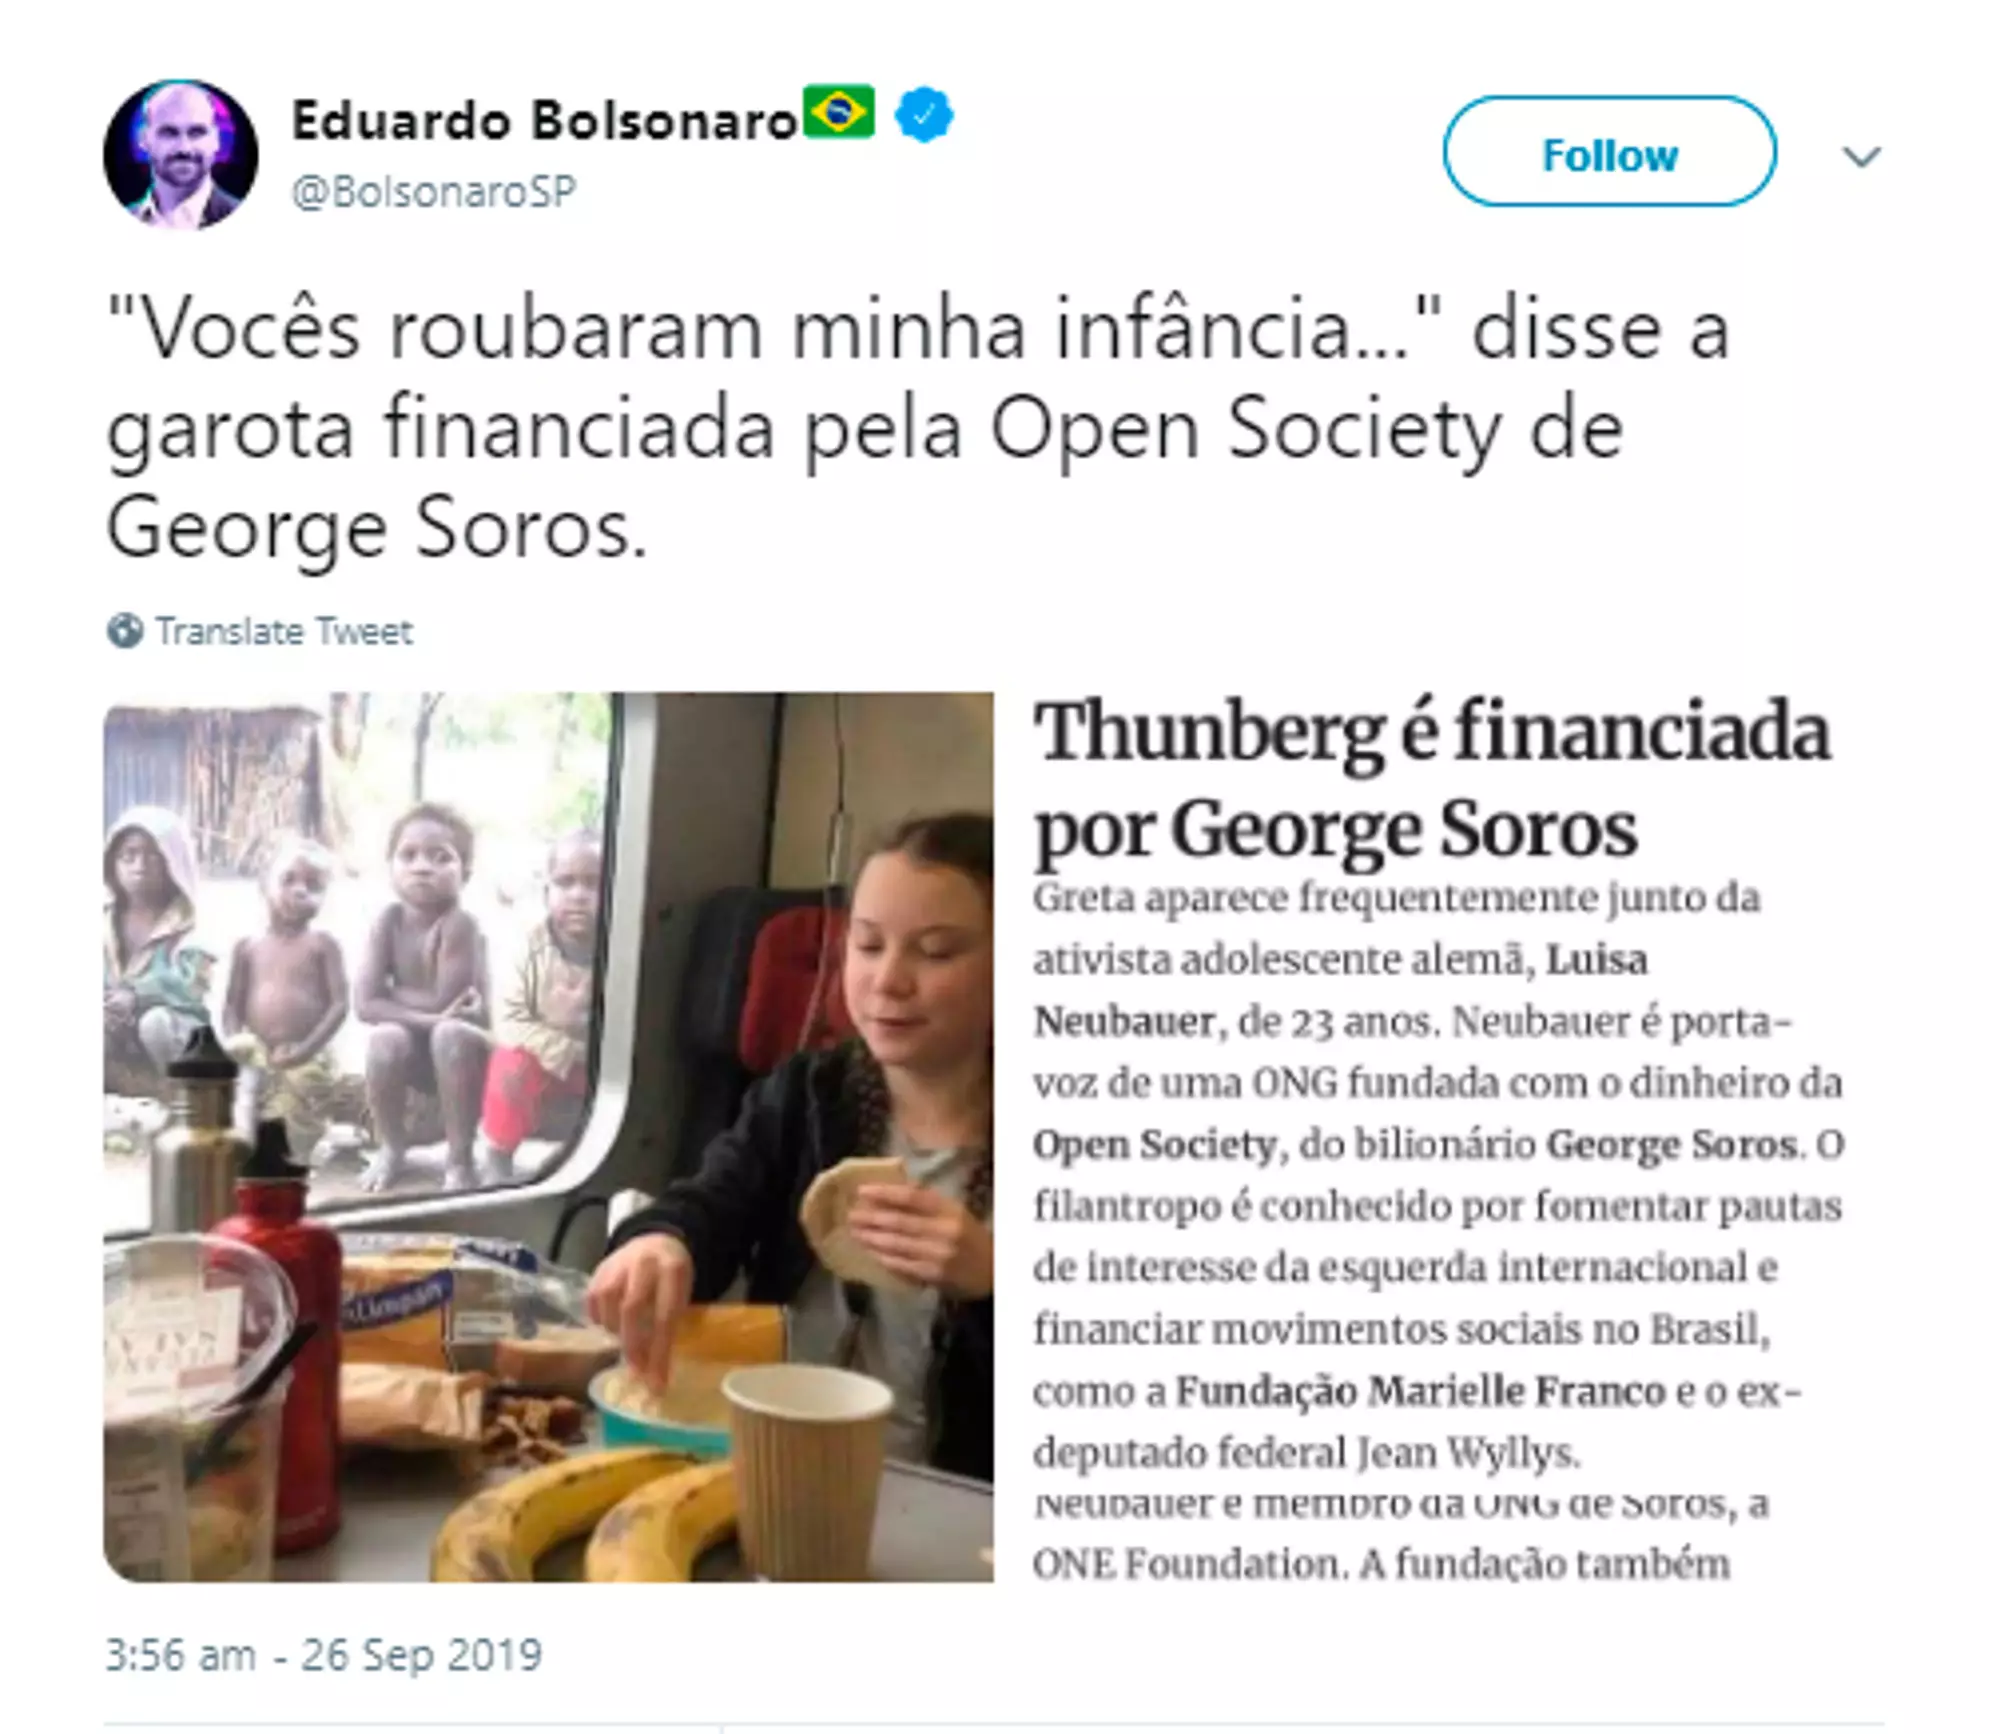 The tweet from Eduardo Bolsonaro.